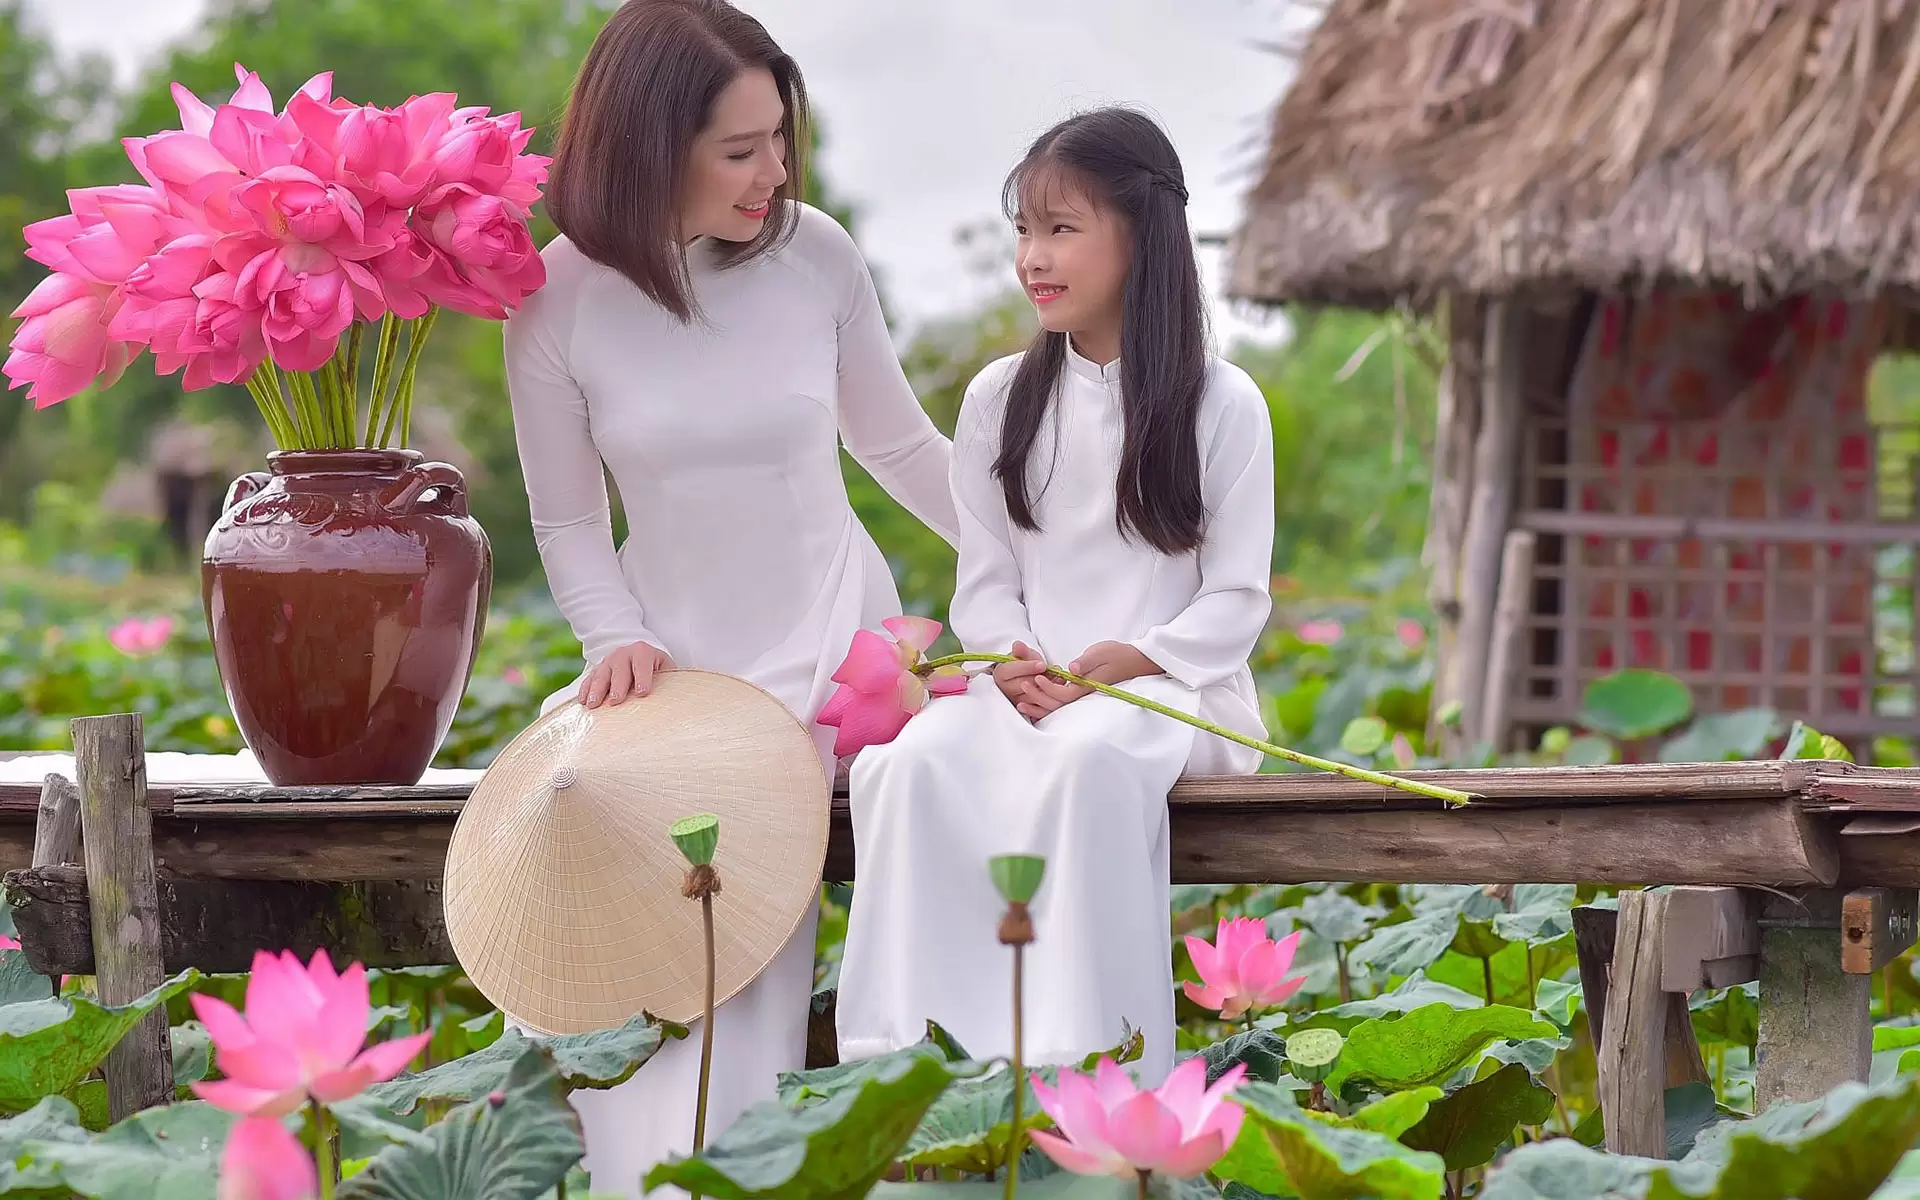 Flowers in Vietnam: Việt Nam là đất nước của những bông hoa đẹp và đa dạng. Hãy cùng khám phá những loài hoa đặc trưng như hoa hồng đại đóa, hoa cúc, hoa lay ơn, và rất nhiều loại hoa khác. Hình ảnh sắc màu và tinh tế sẽ khiến bạn có cảm giác như đang đến với bất cứ ngọn đồi hoa nào ở Việt Nam.